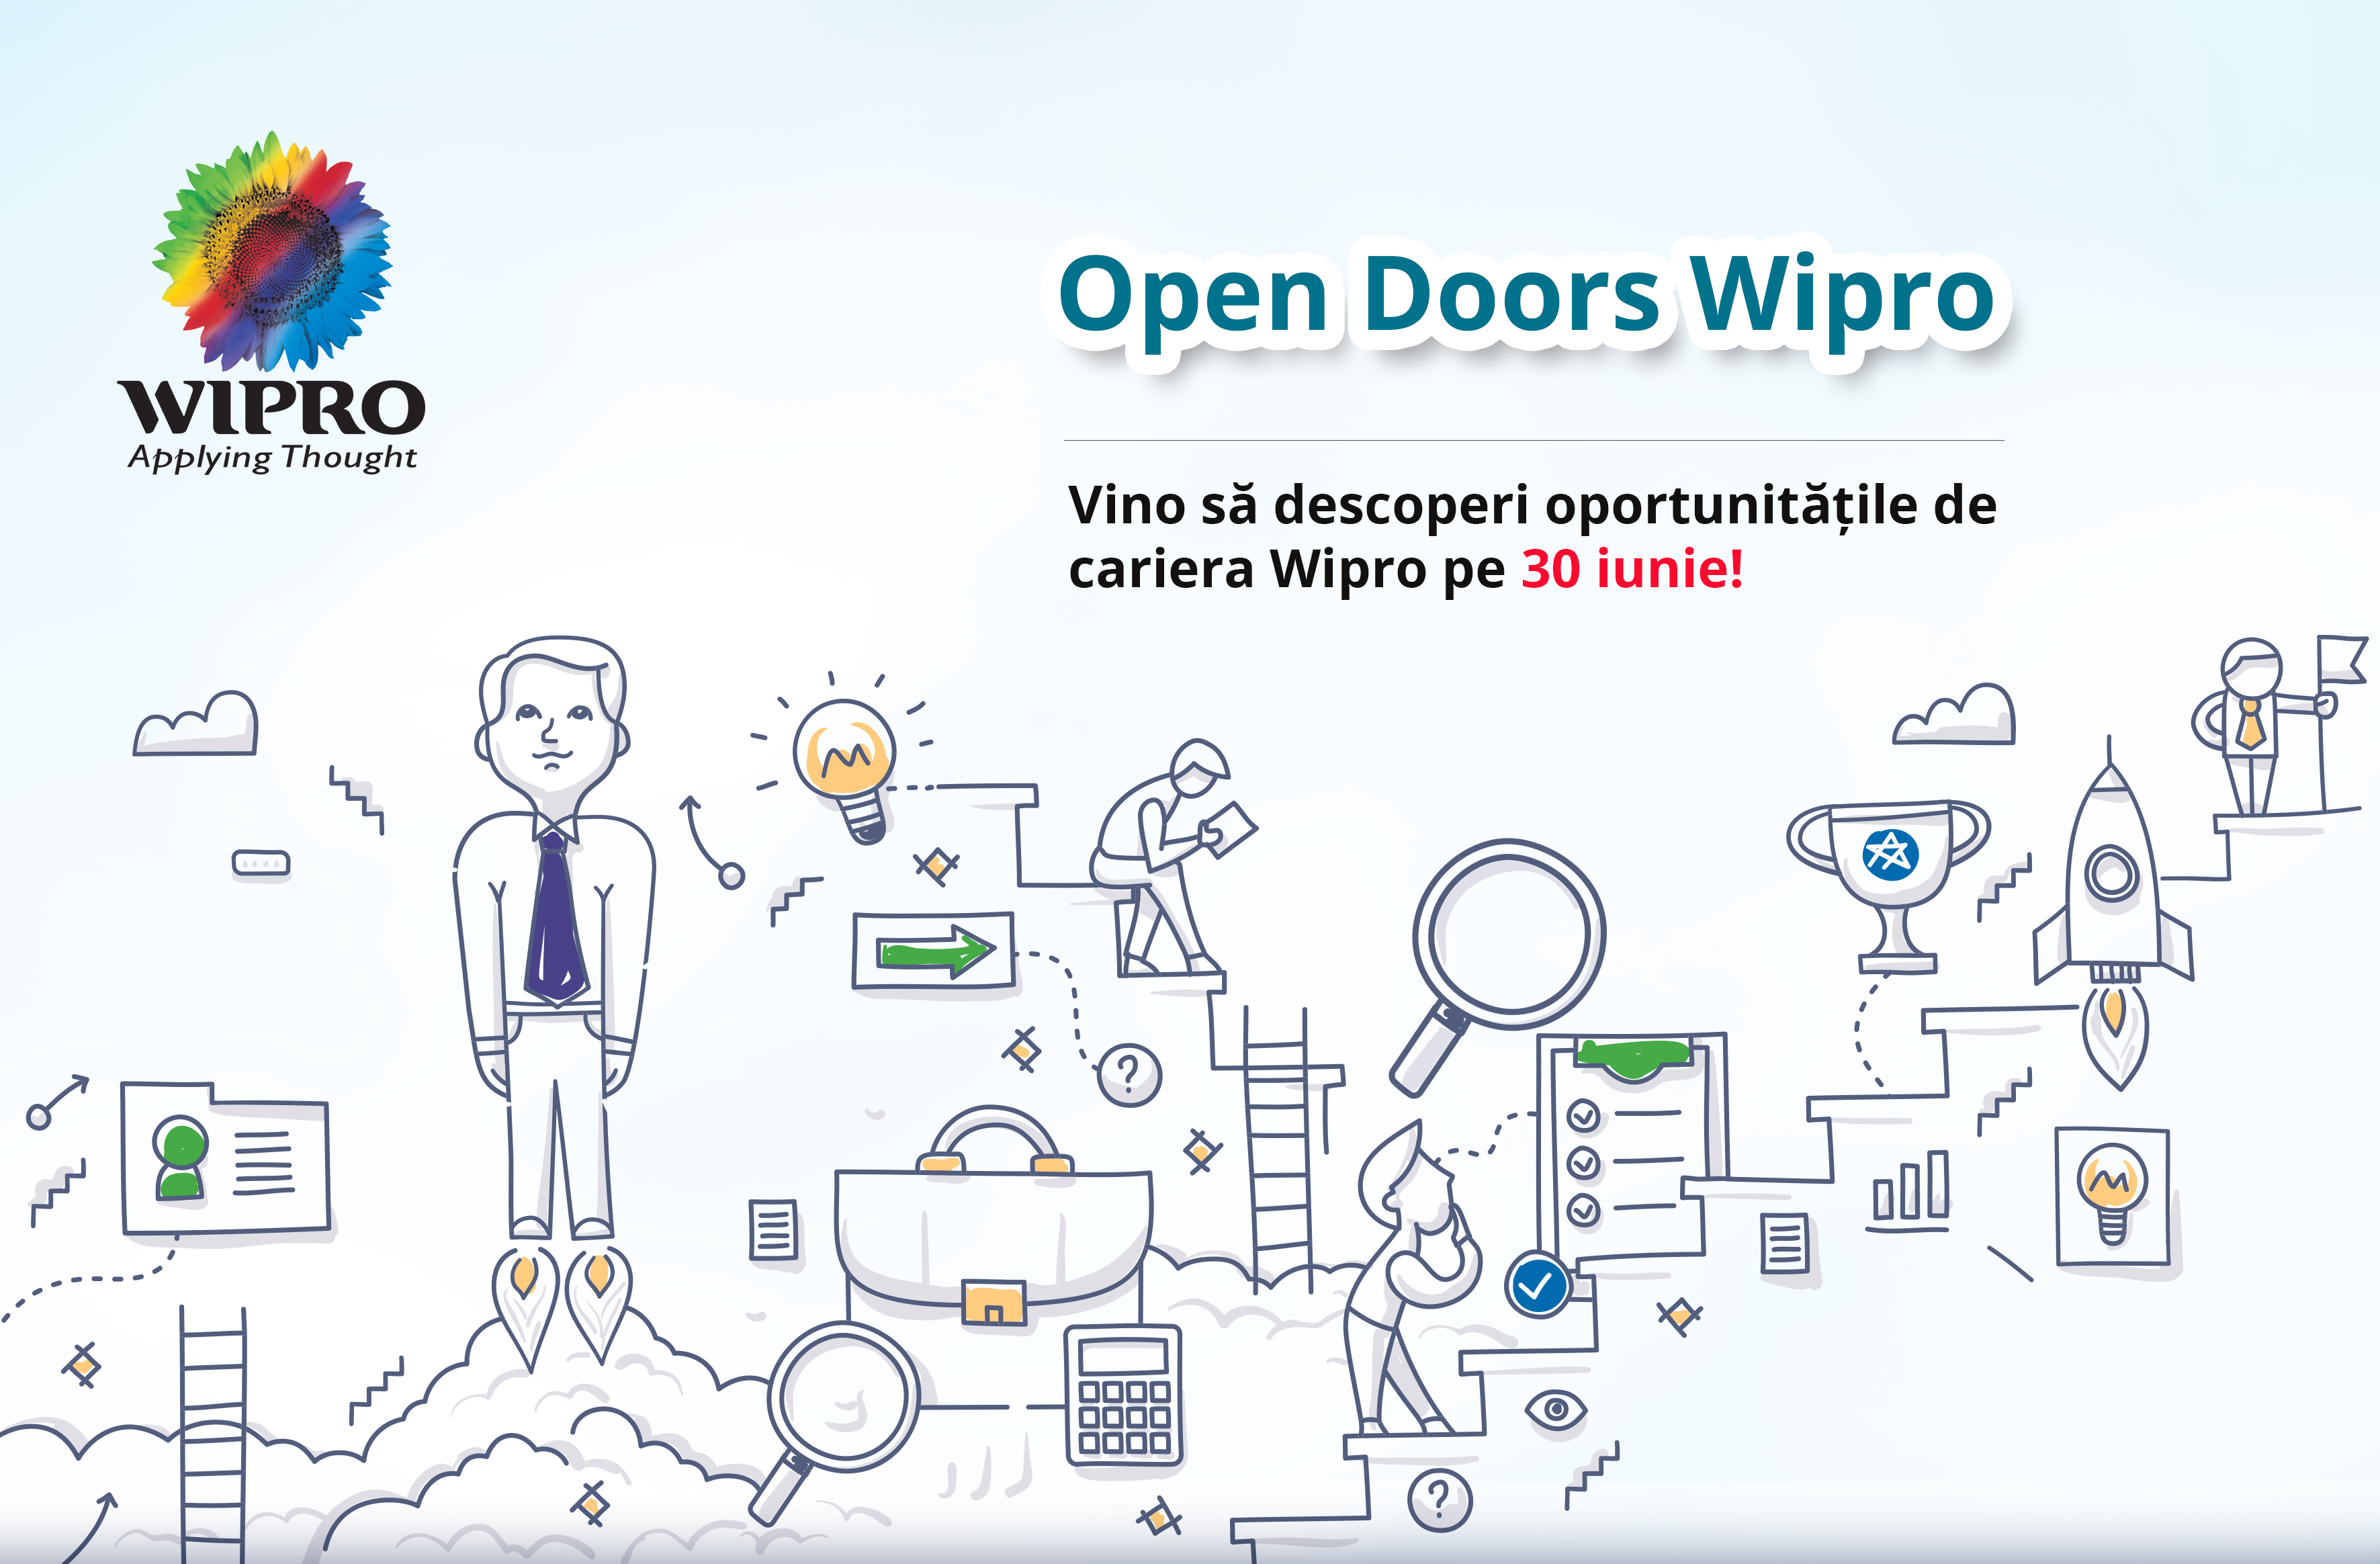 Wipro Open Doors